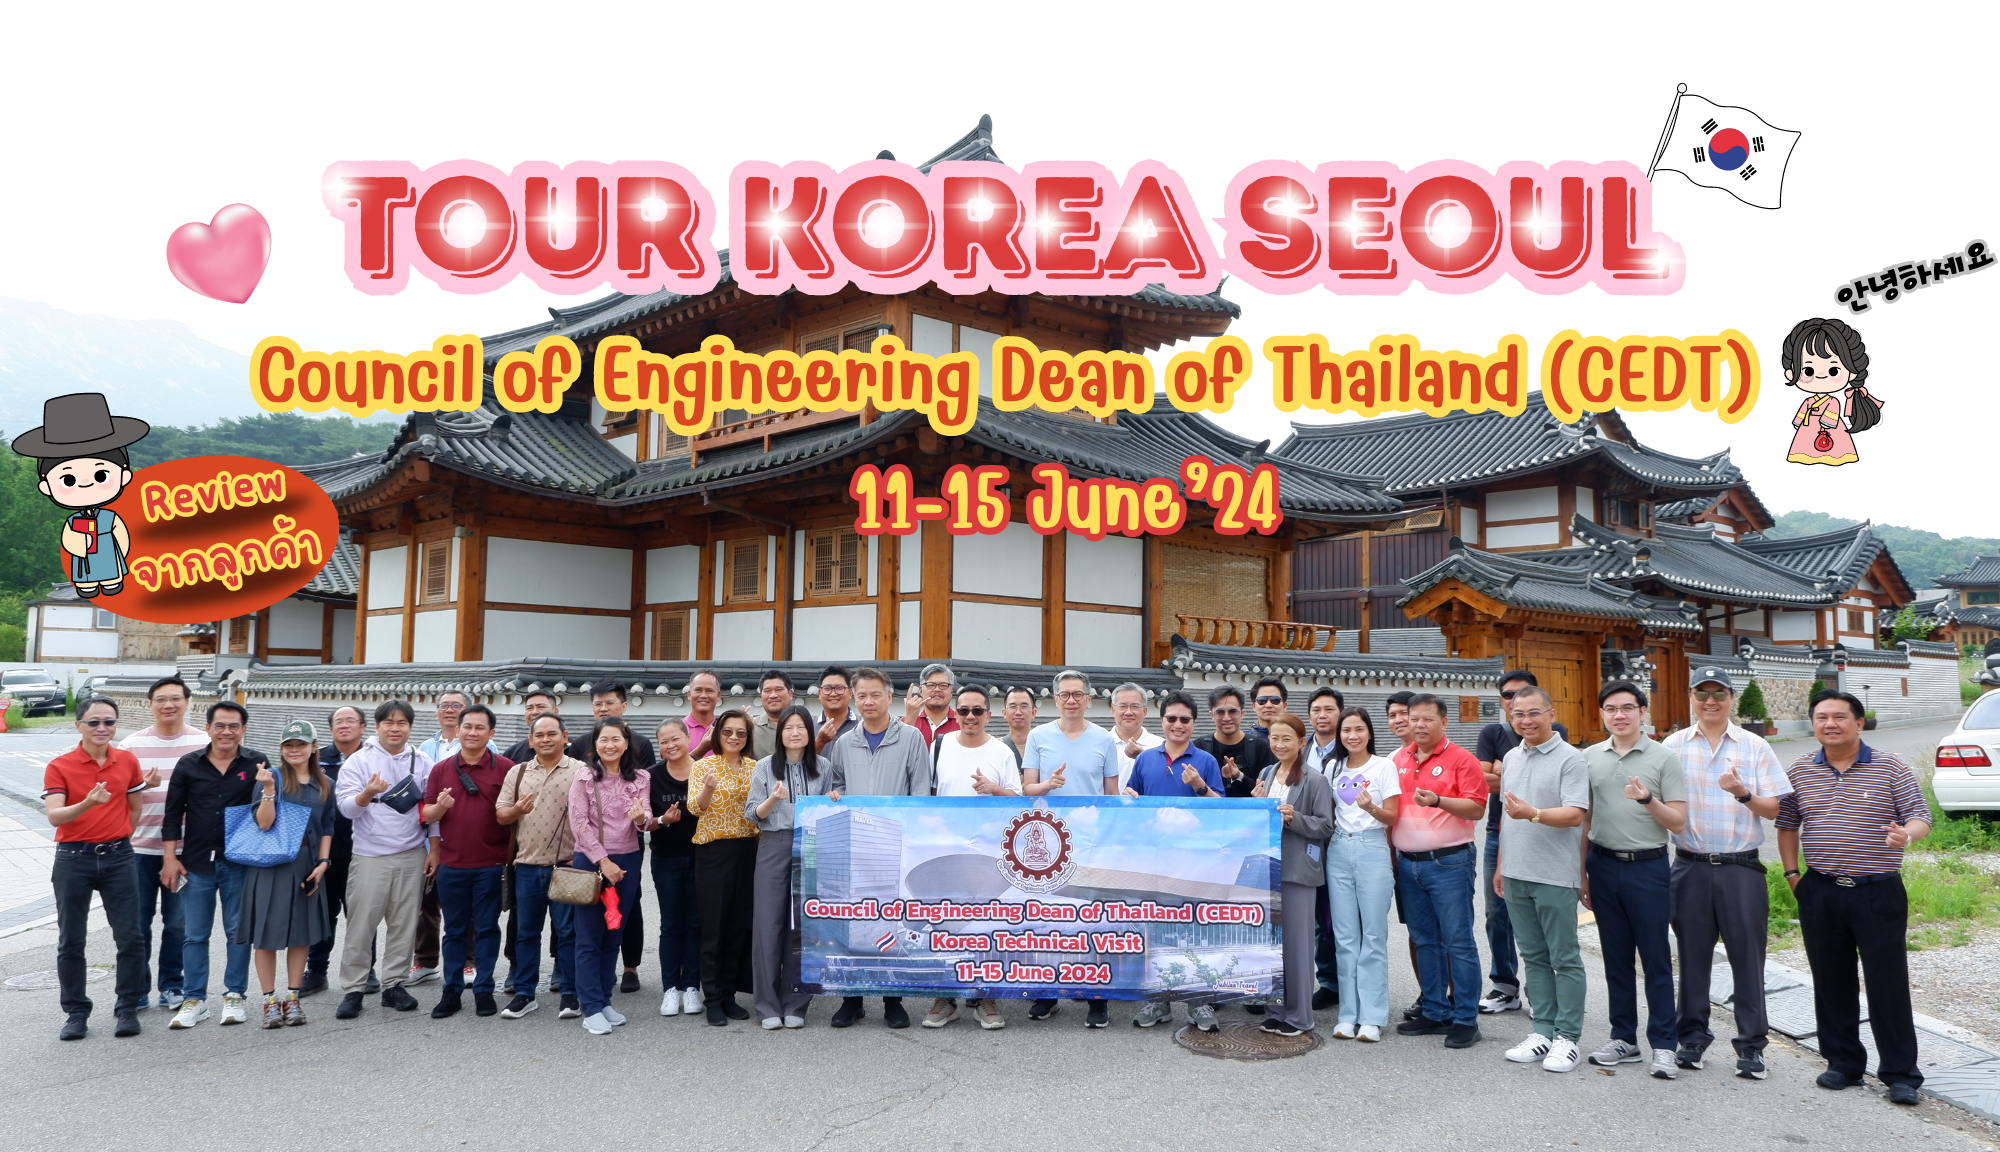 รีวิวขอบคุณจากลูกค้า : Council of Engineering Dean of Thailand (CEDT) Tour Korea Seoul 11-15 June’24